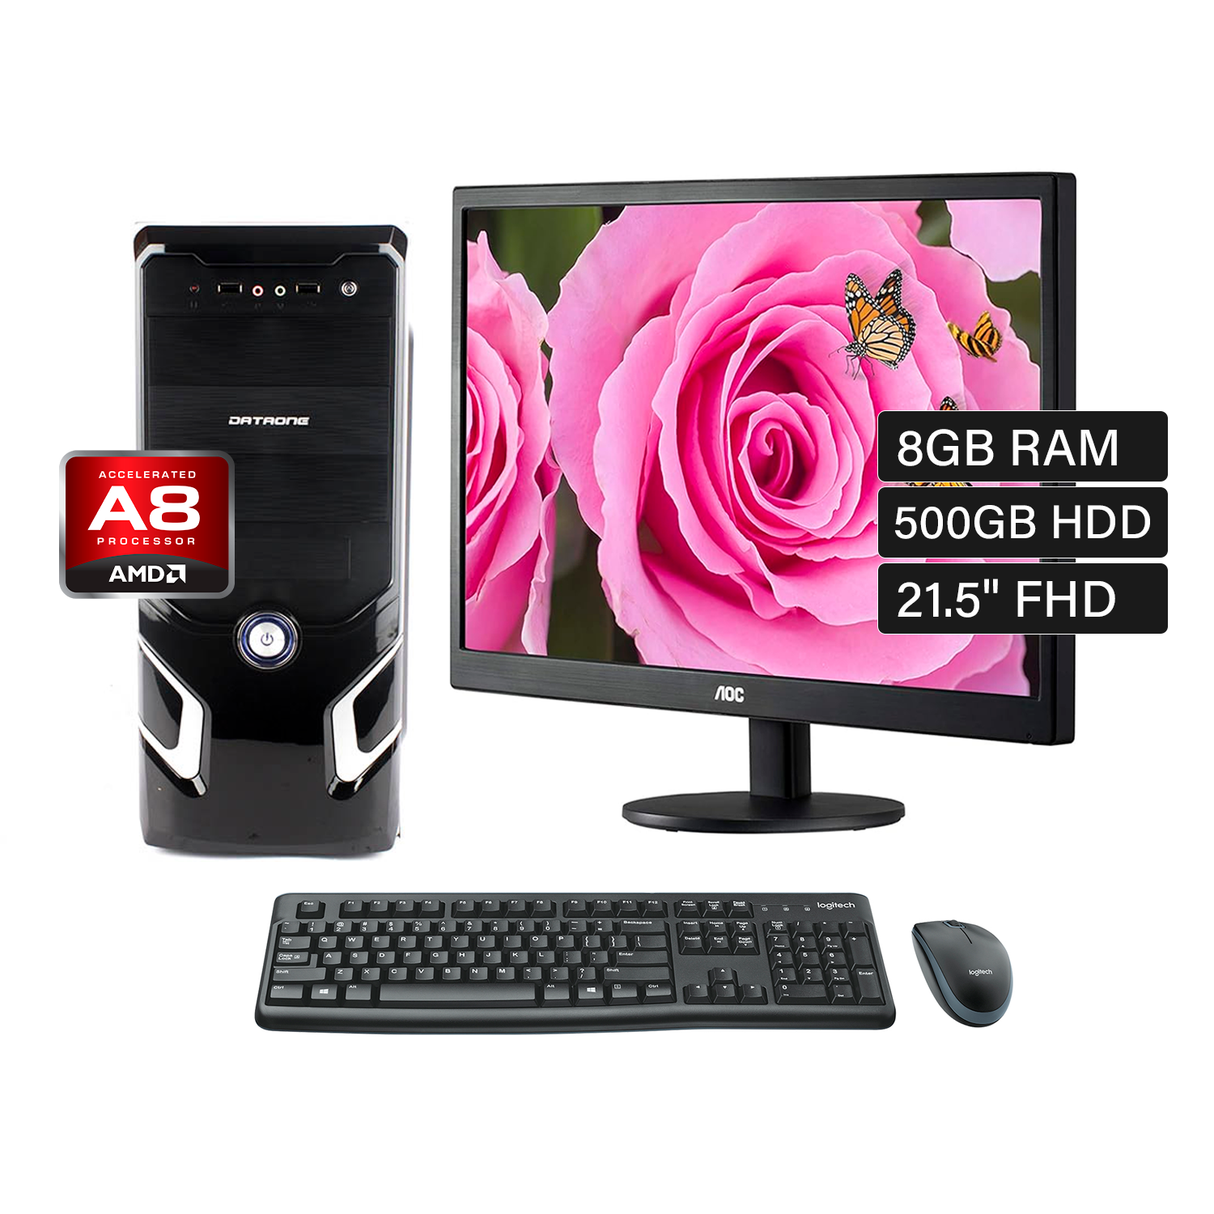 PC de Escritorio AMD A8 9600 RAM 8GB Disco 256 SSD Monitor 21.5" + kit teclado y mouse